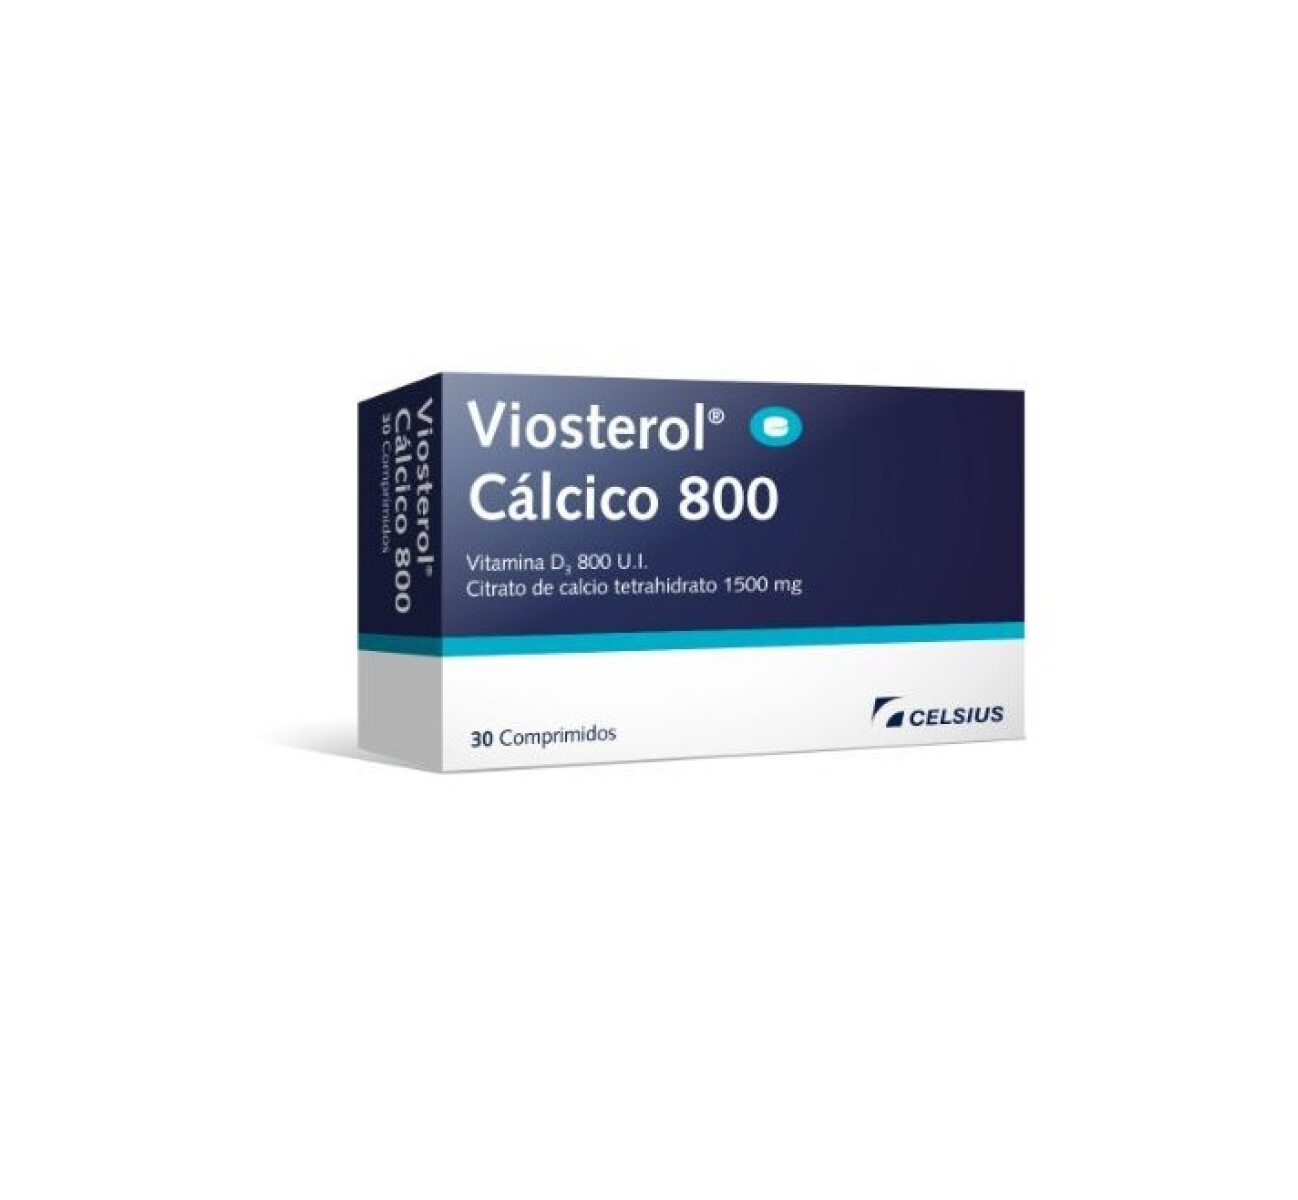 Viosterol Calcico 800 x 30 COM 